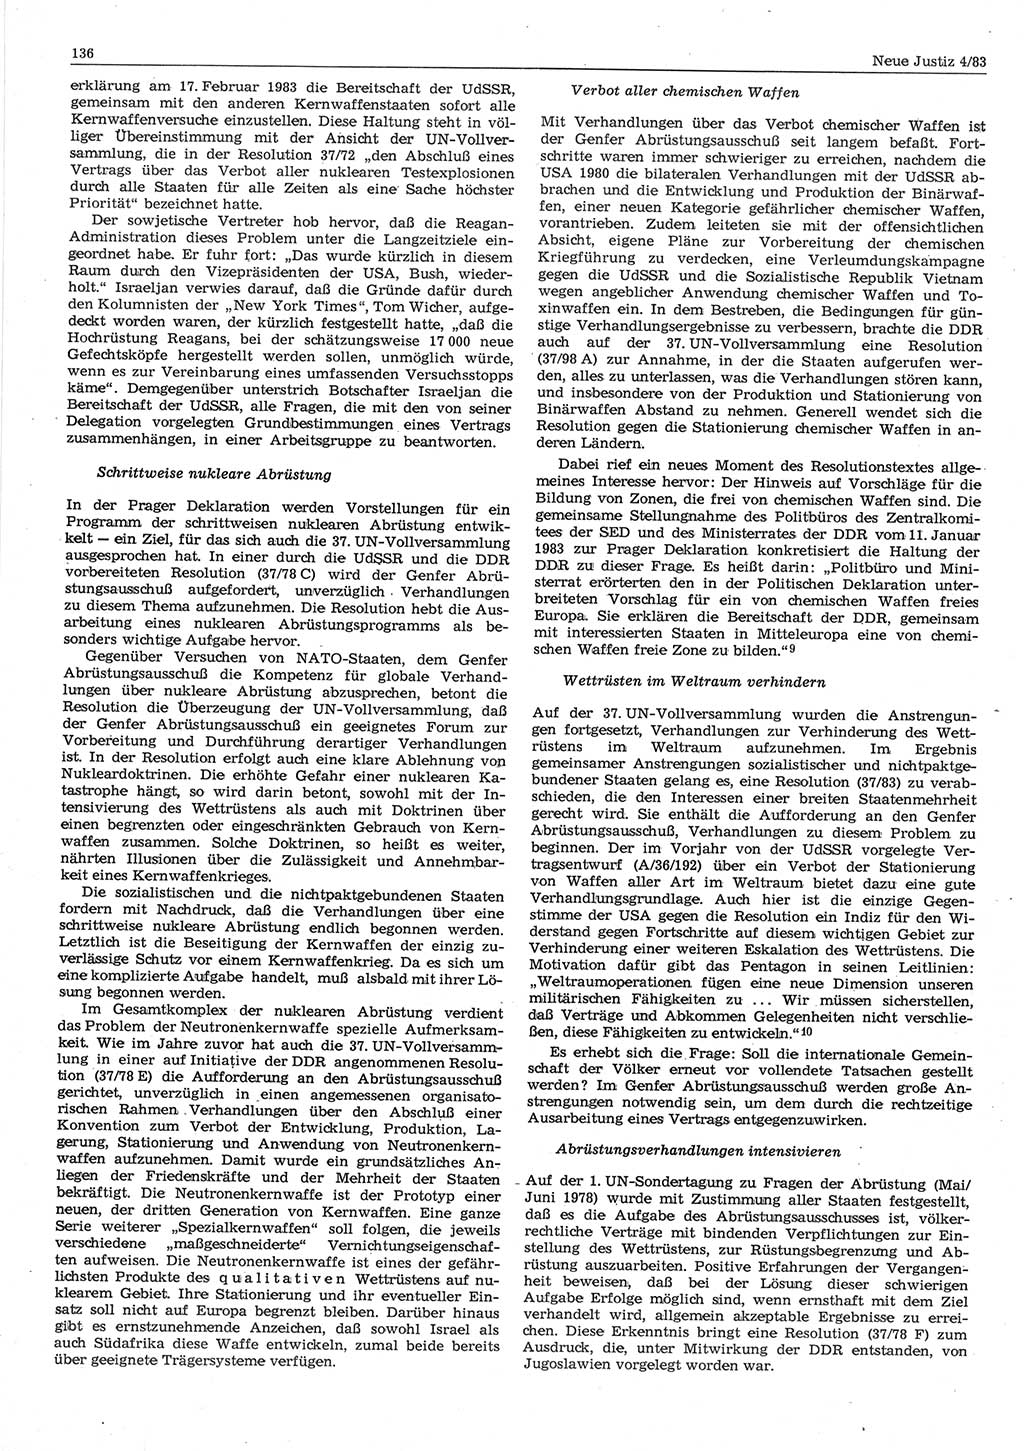 Neue Justiz (NJ), Zeitschrift für sozialistisches Recht und Gesetzlichkeit [Deutsche Demokratische Republik (DDR)], 37. Jahrgang 1983, Seite 136 (NJ DDR 1983, S. 136)